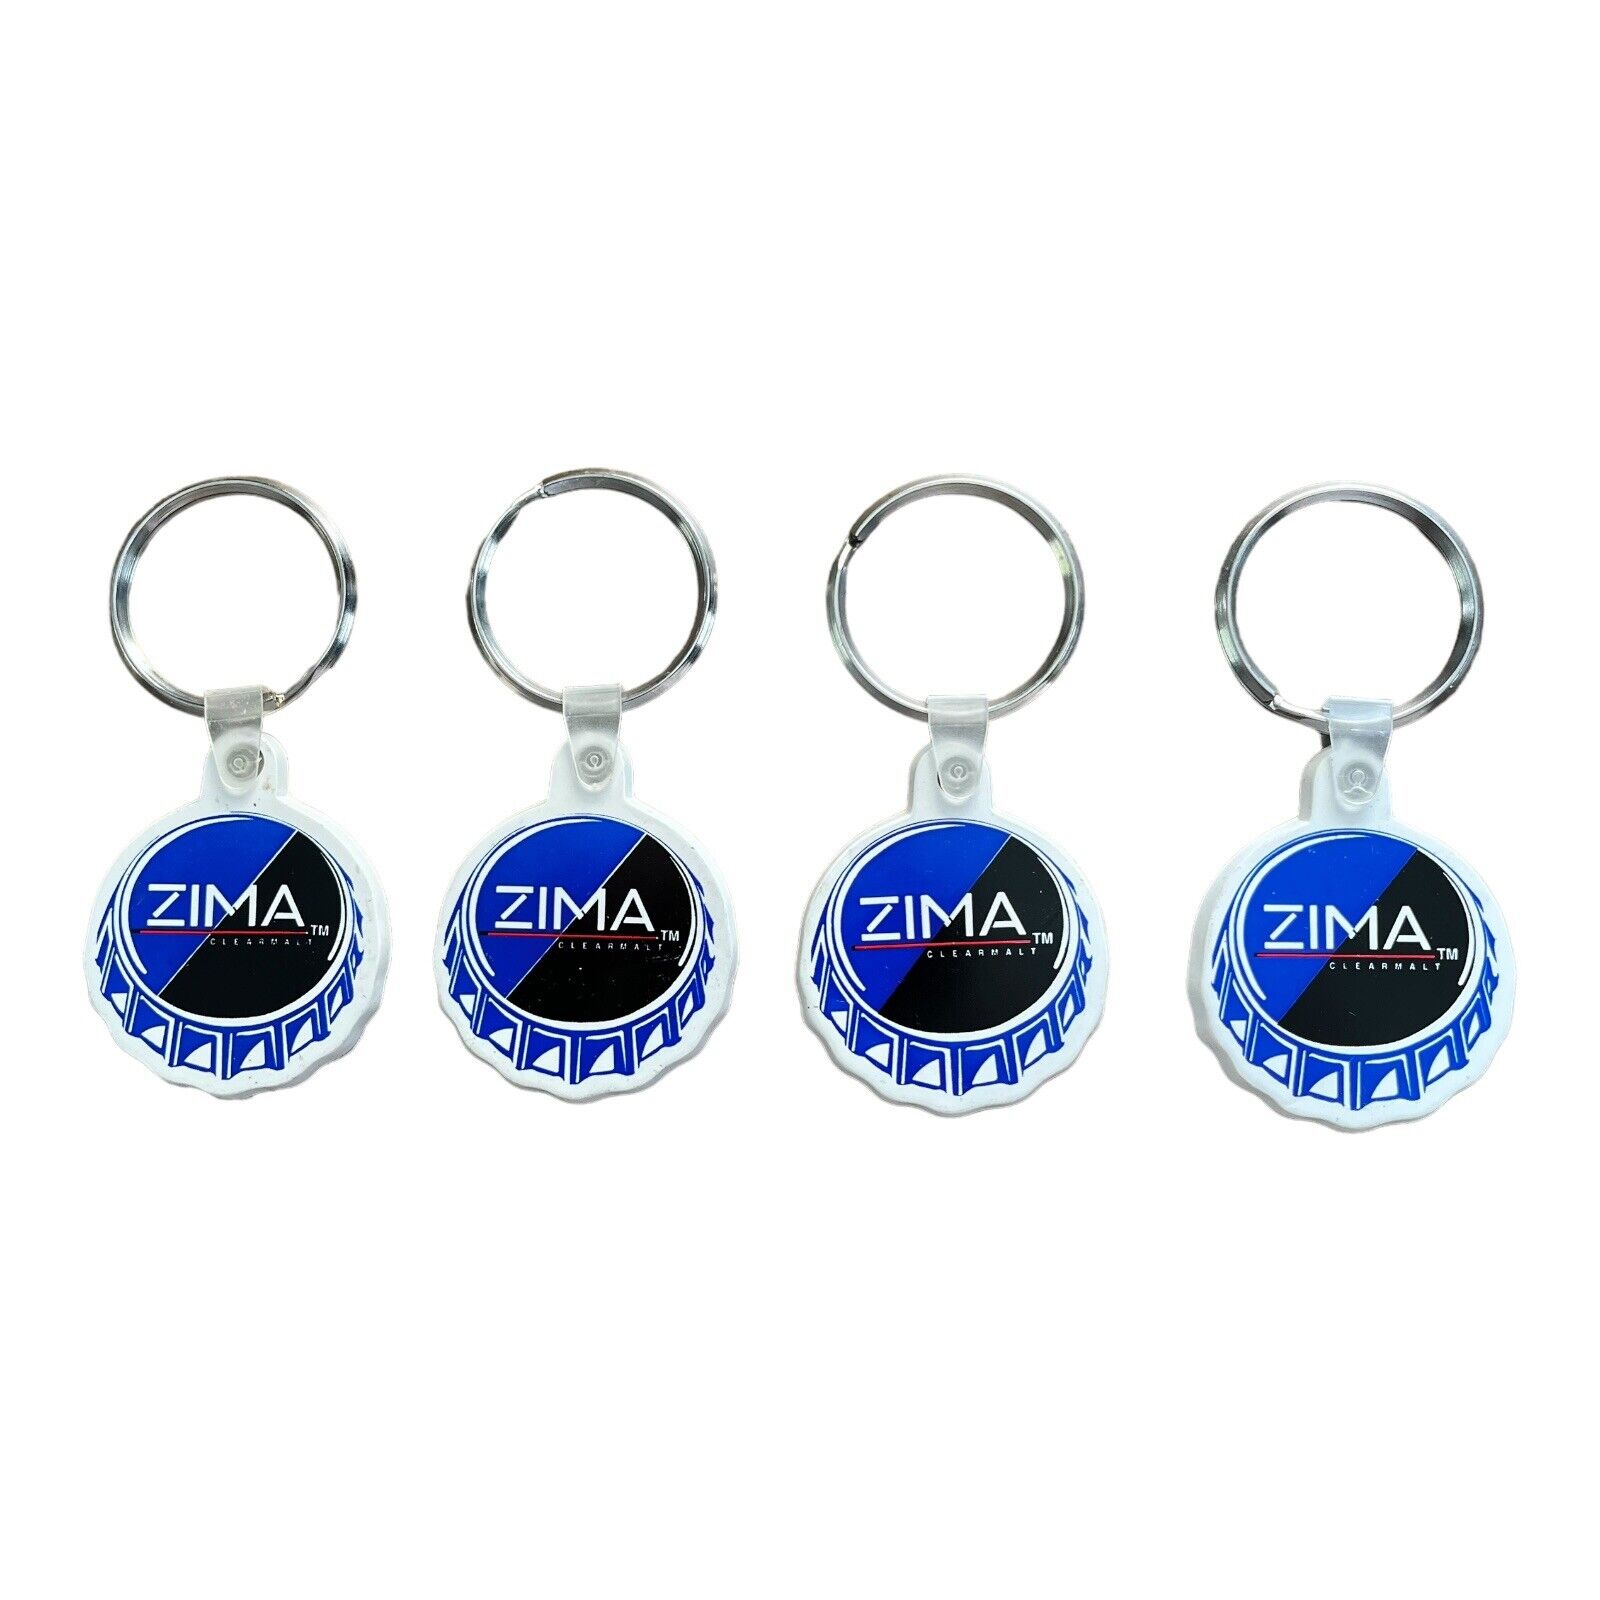 LOT OF 4 - Zima Clear Malt Beverage Keychain Key Ring Bottle Cap